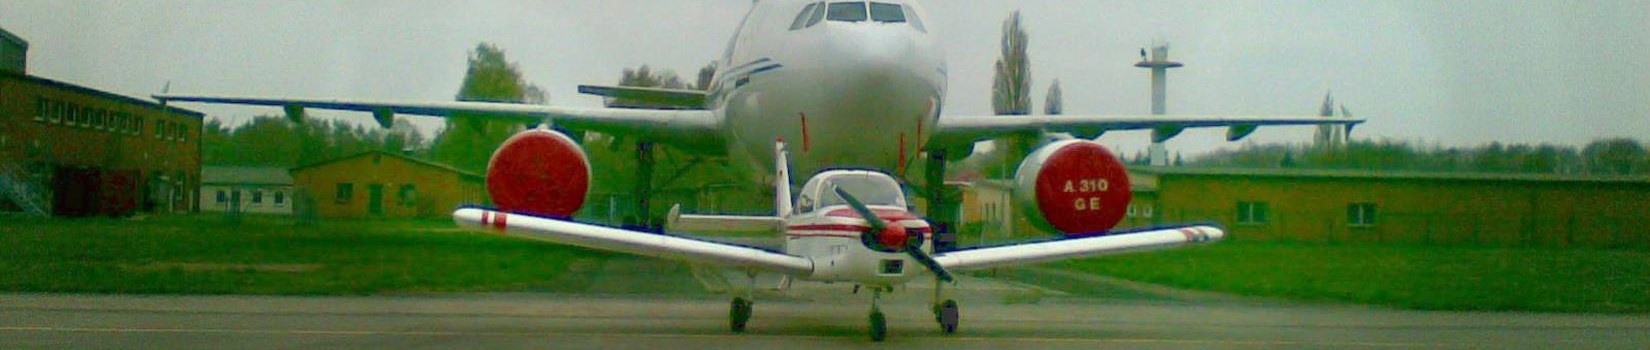 CFB Aircraft